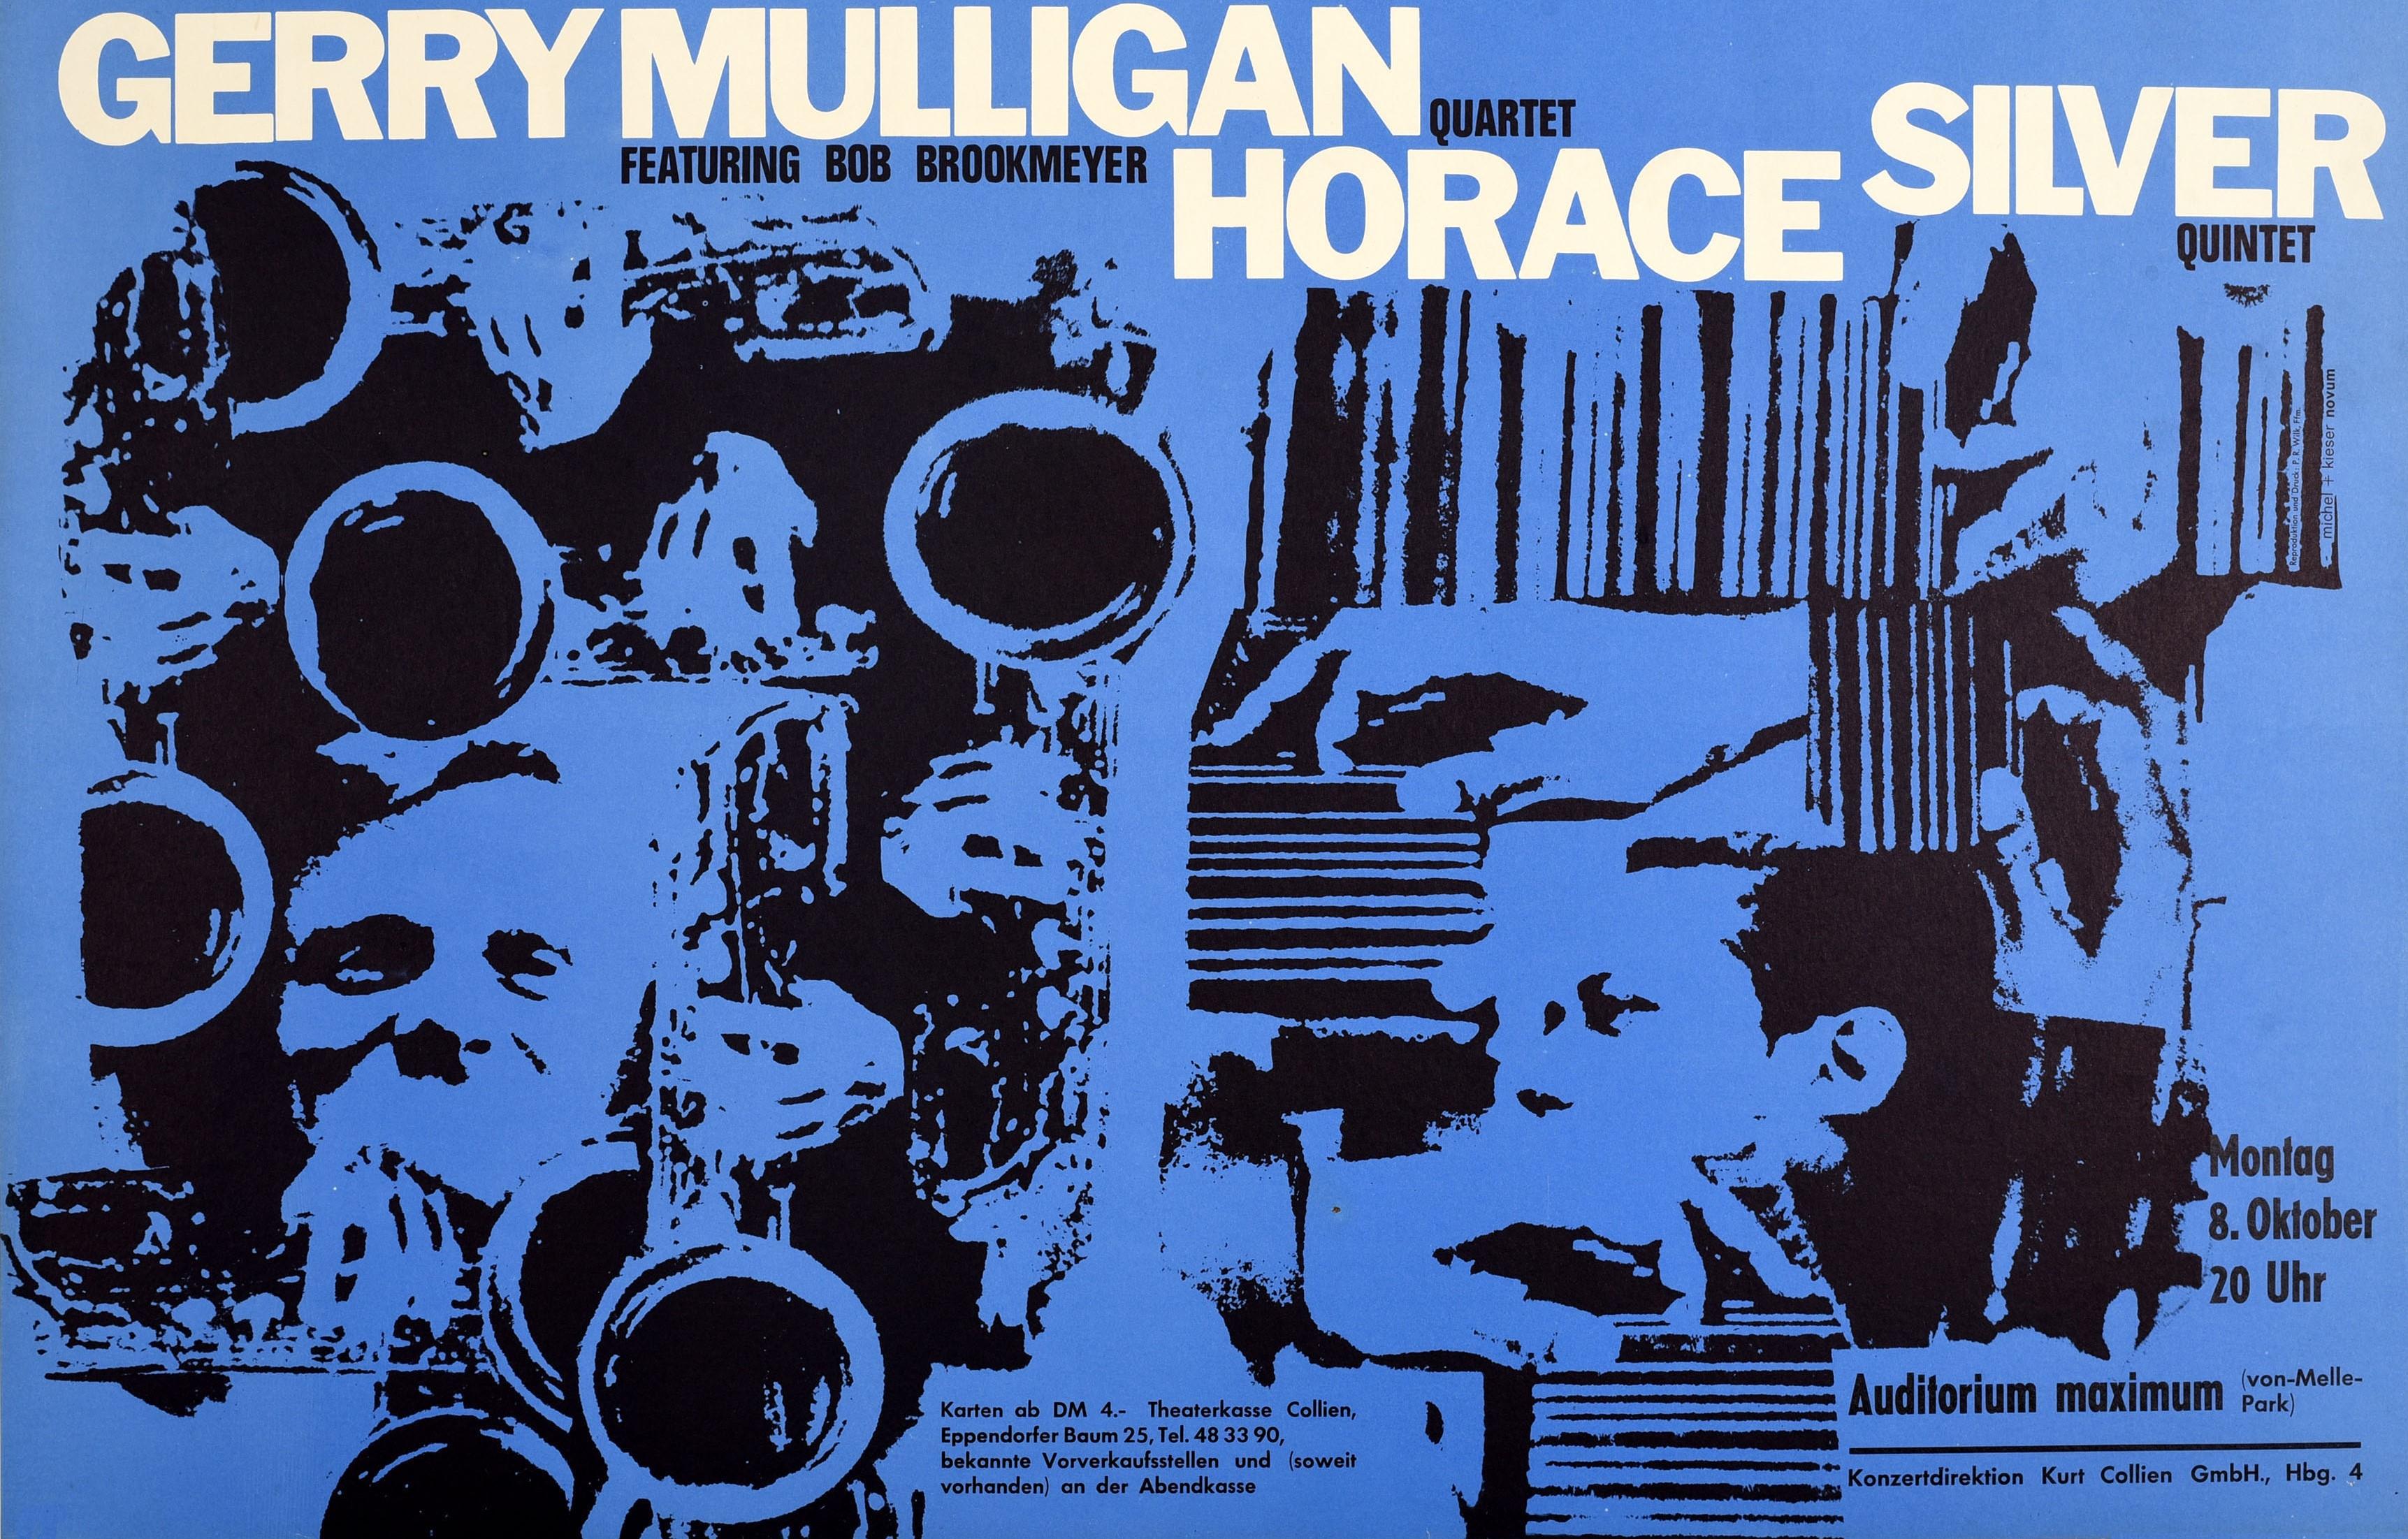 Original Vintage Musik Plakat für die Norman Granz präsentiert Jazz at the Philharmonic Gerry Mulligan Quartet featuring Bob Brookmeyer Horace Silver Quintet Konzert zeigt ein großes Design der Musiker auf dem blauen Hintergrund, der Titel in fetten